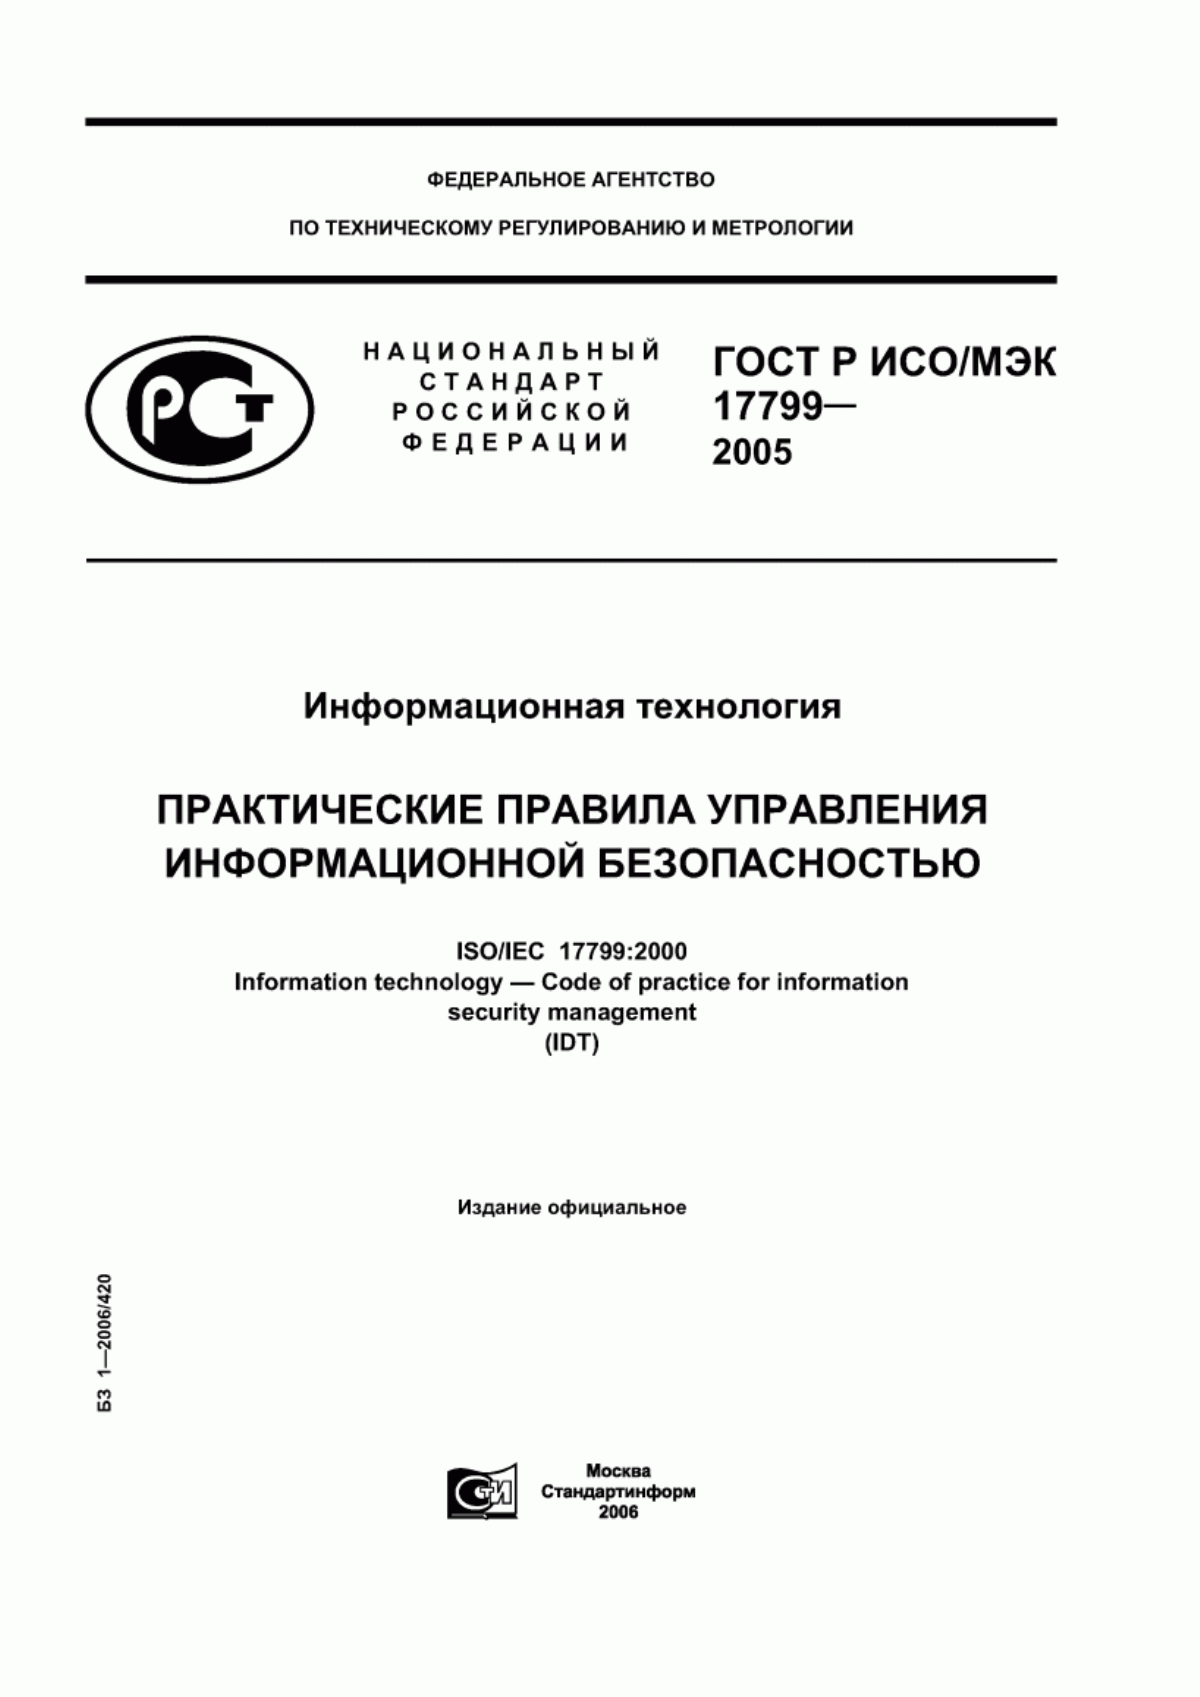 ГОСТ Р ИСО/МЭК 17799-2005 Информационная технология. Практические правила управления информационной безопасностью